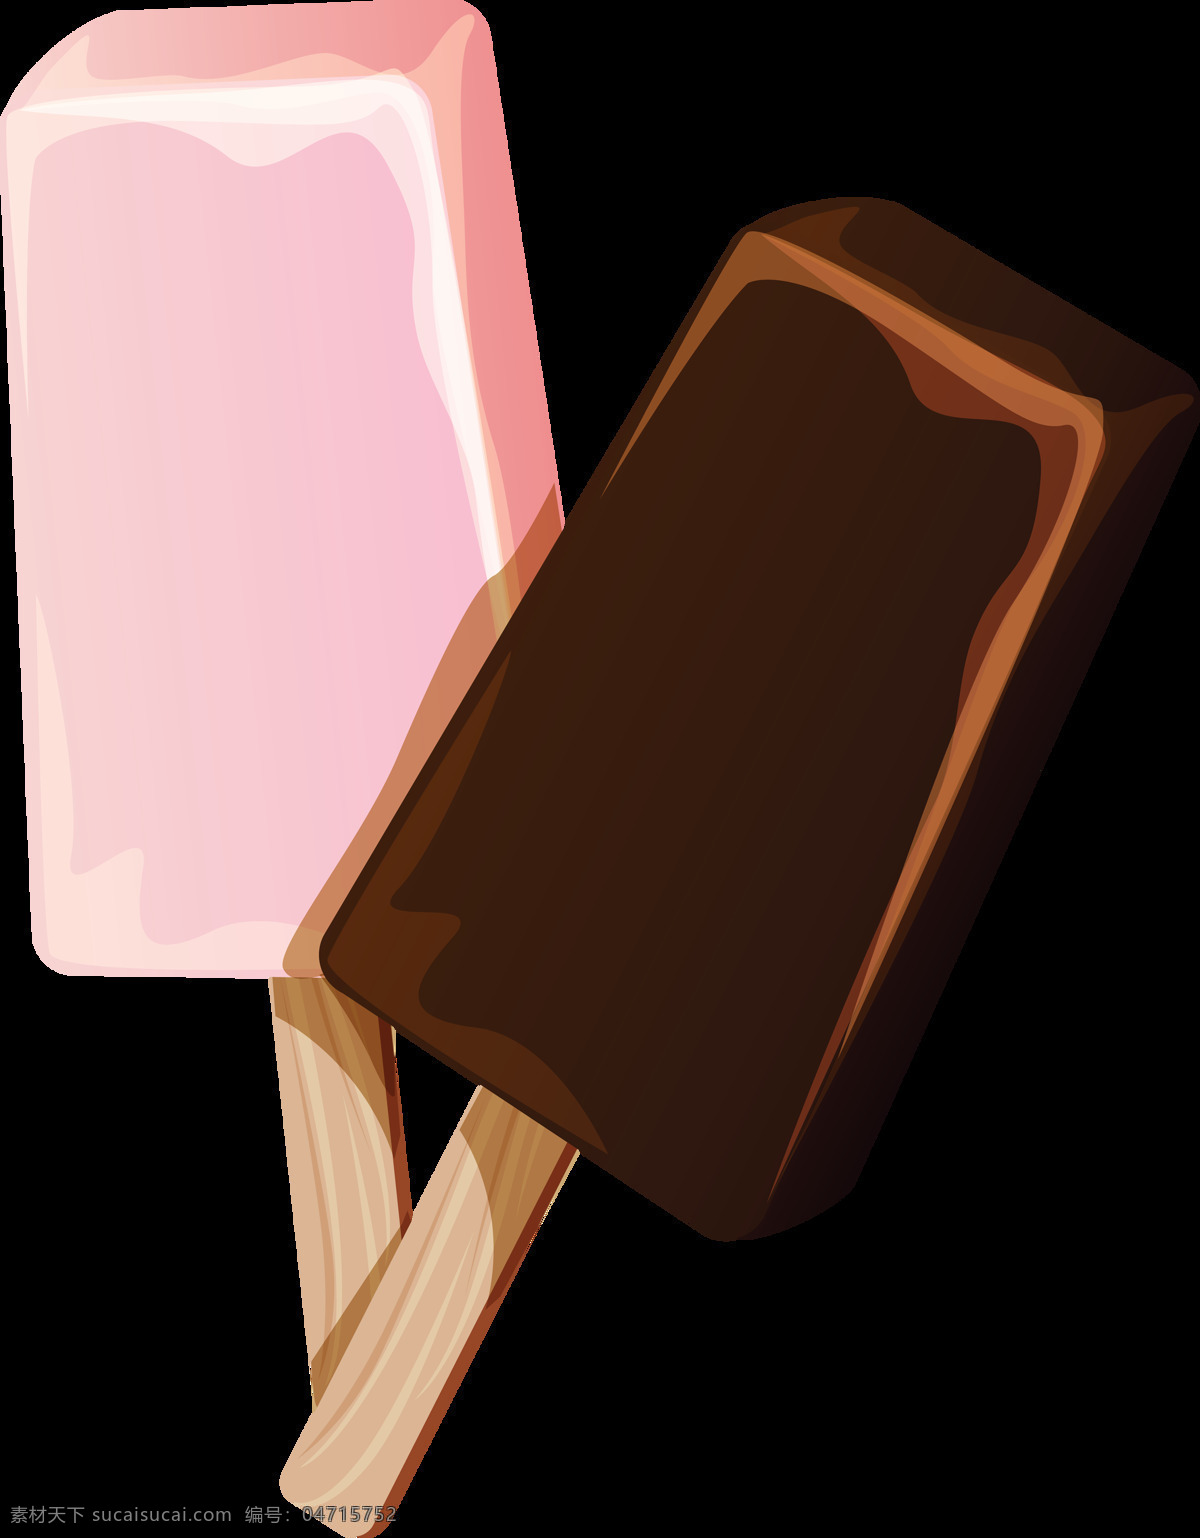 雪糕 冰淇淋 免 抠 透明 图 层 冰激凌素材 夏季海报元素 巧克力冰淇淋 夏季 海报 奶油冰淇淋 冰淇淋广告 冰激凌图片 冰淇淋图片 冷饮广告素材 广告